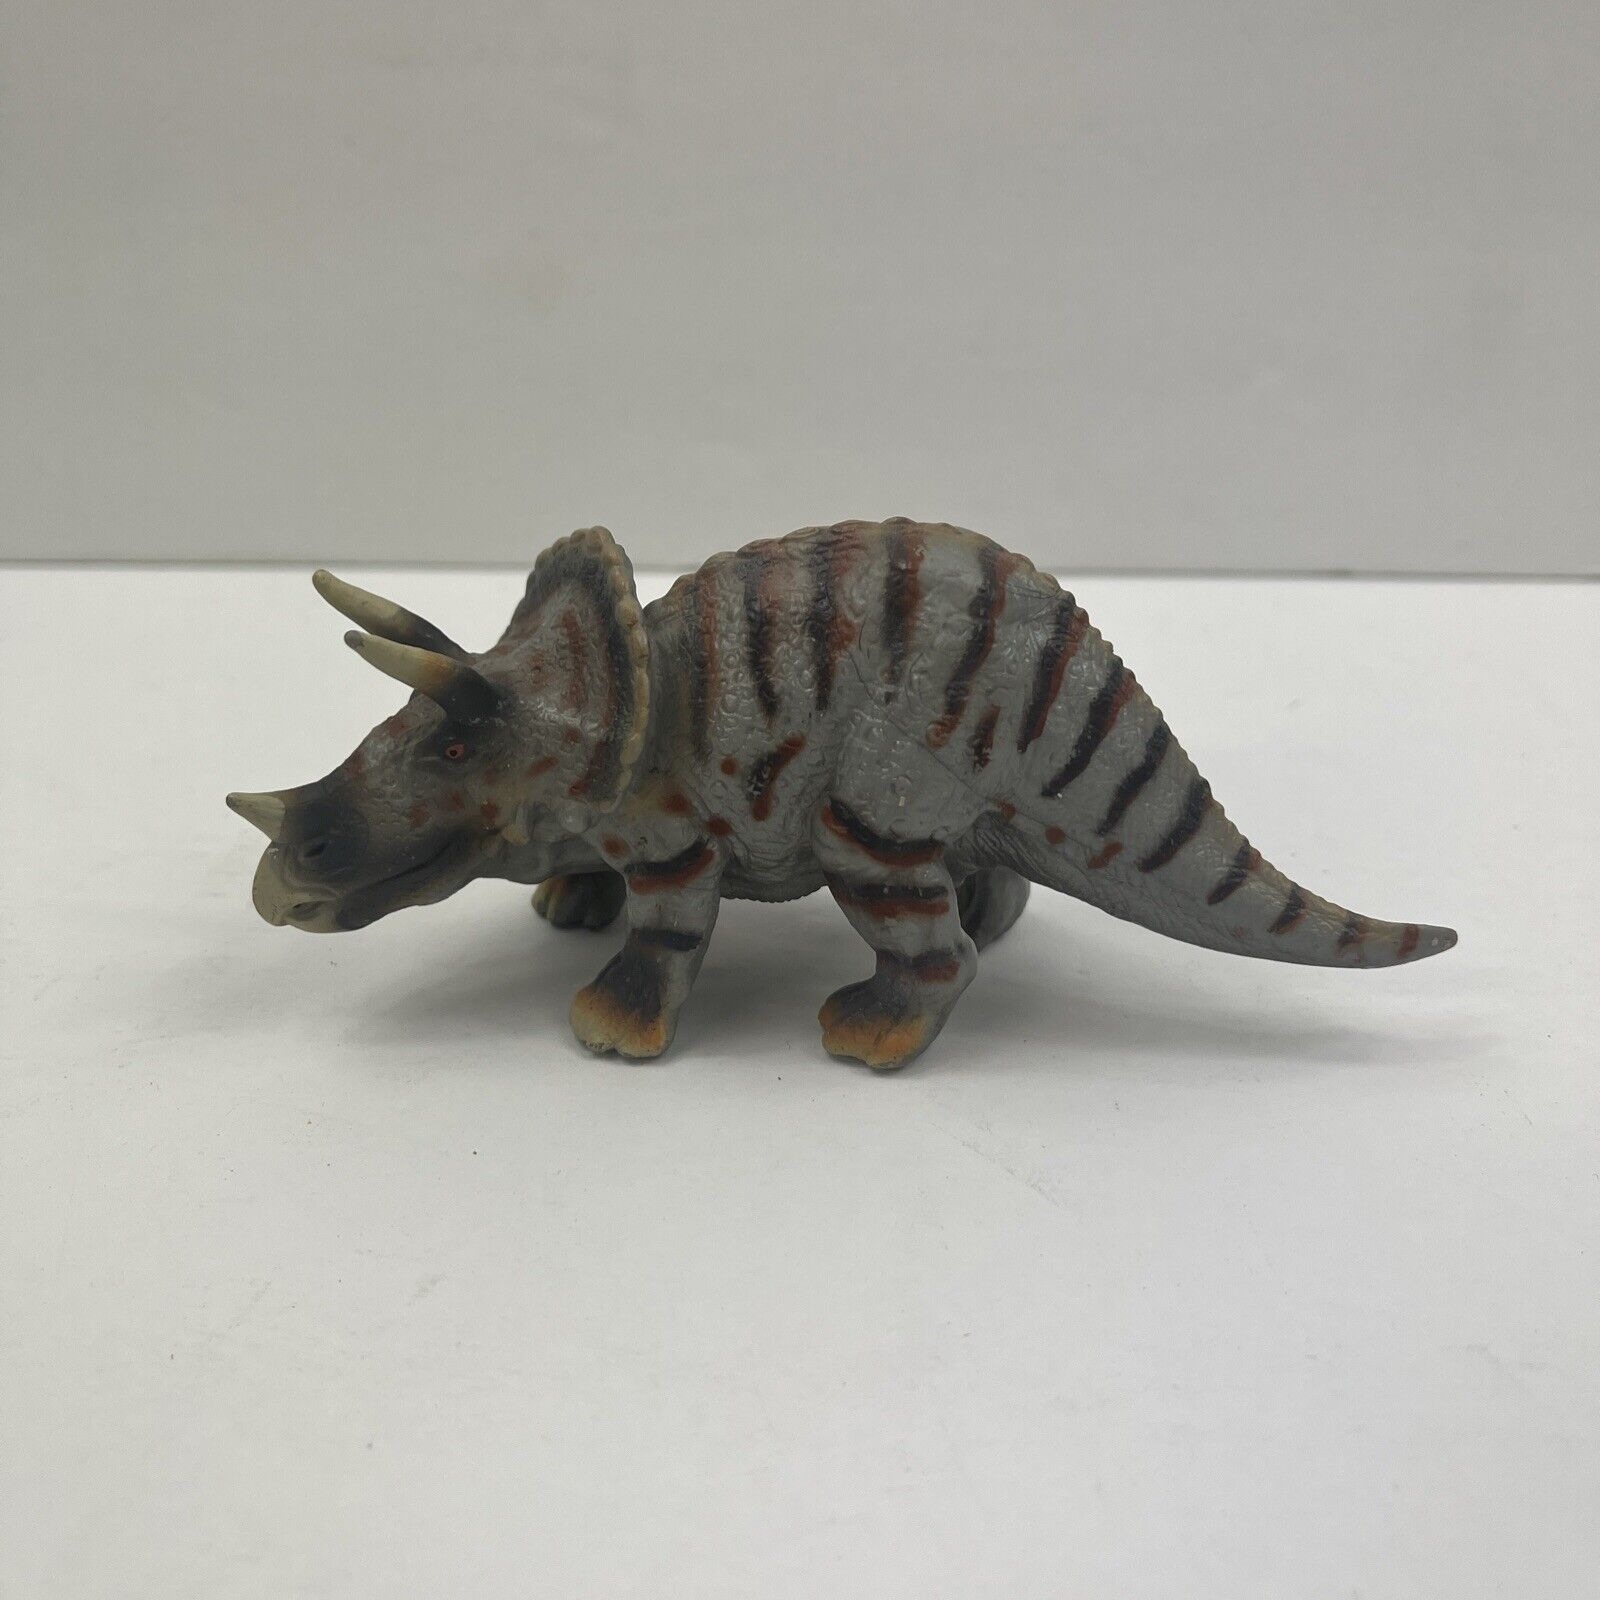 Schleich Triceratops Prehistoric Dinosaur Figure 14504 Retired 2003-2015